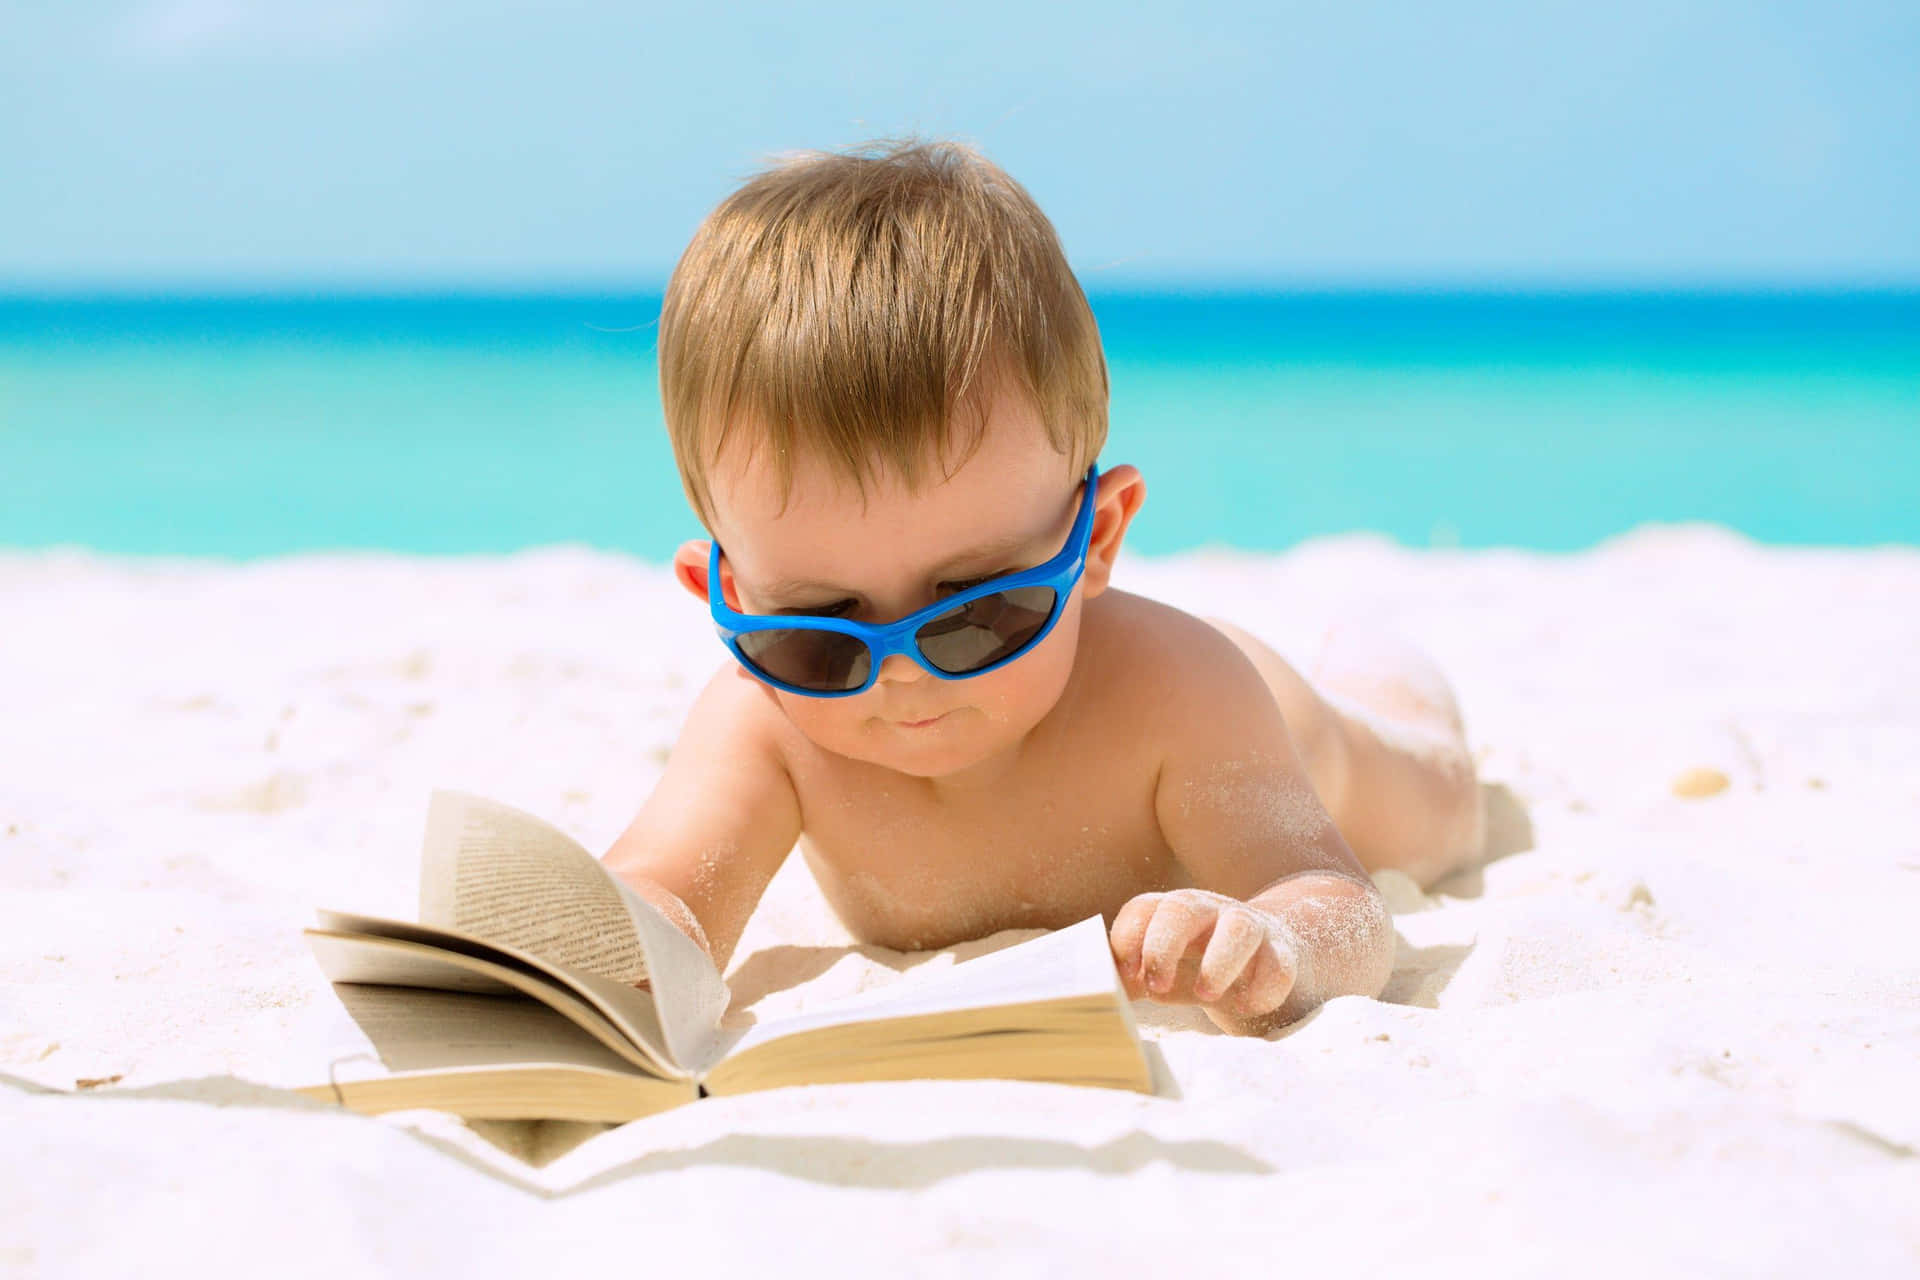 Einbaby Trägt Eine Sonnenbrille Und Liest Ein Buch Am Strand.